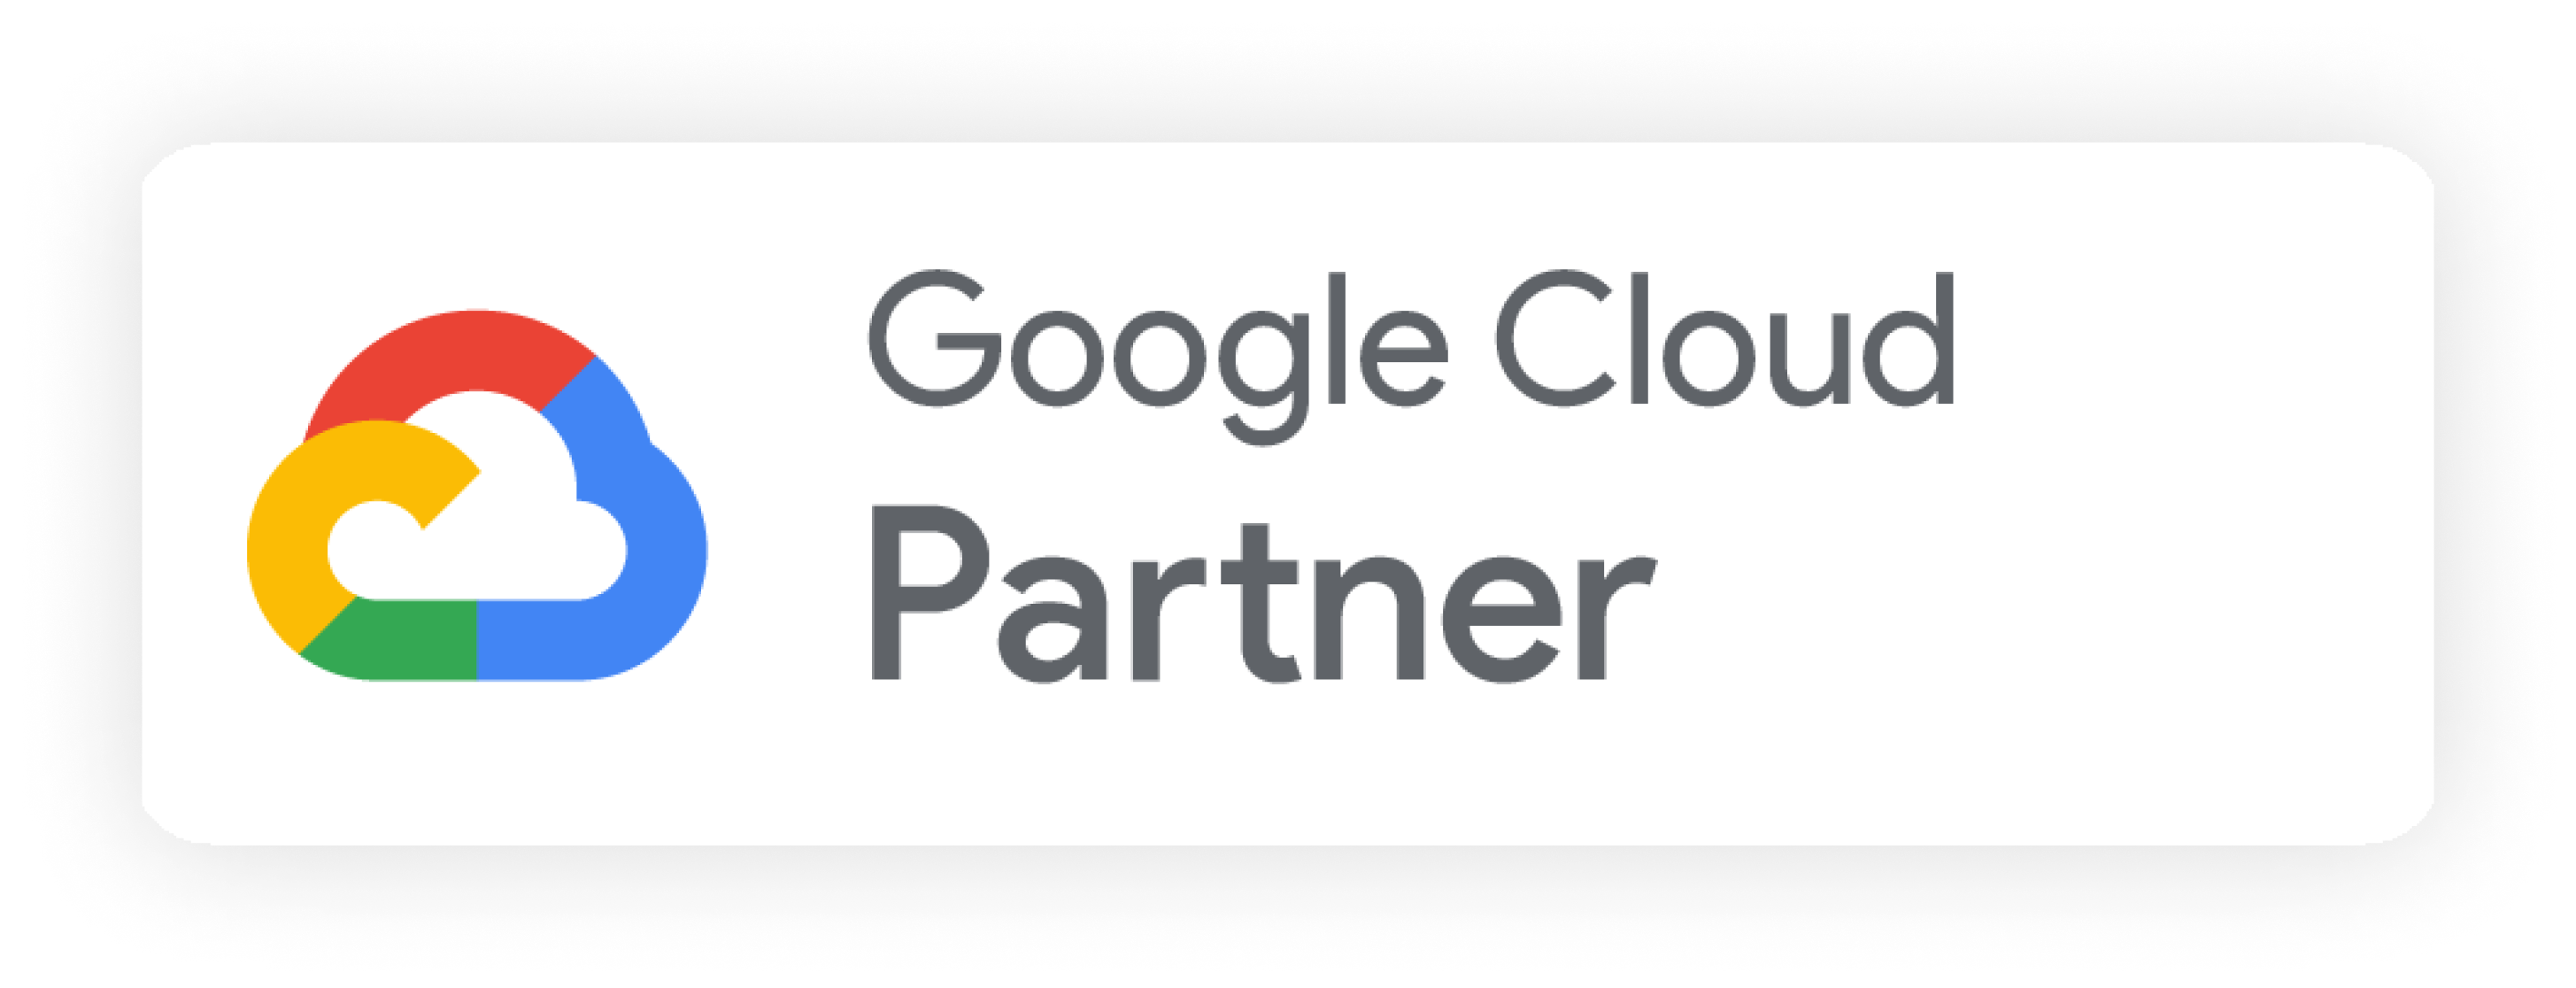 Google_Cloud_Partner_no_outline_horizontal 1